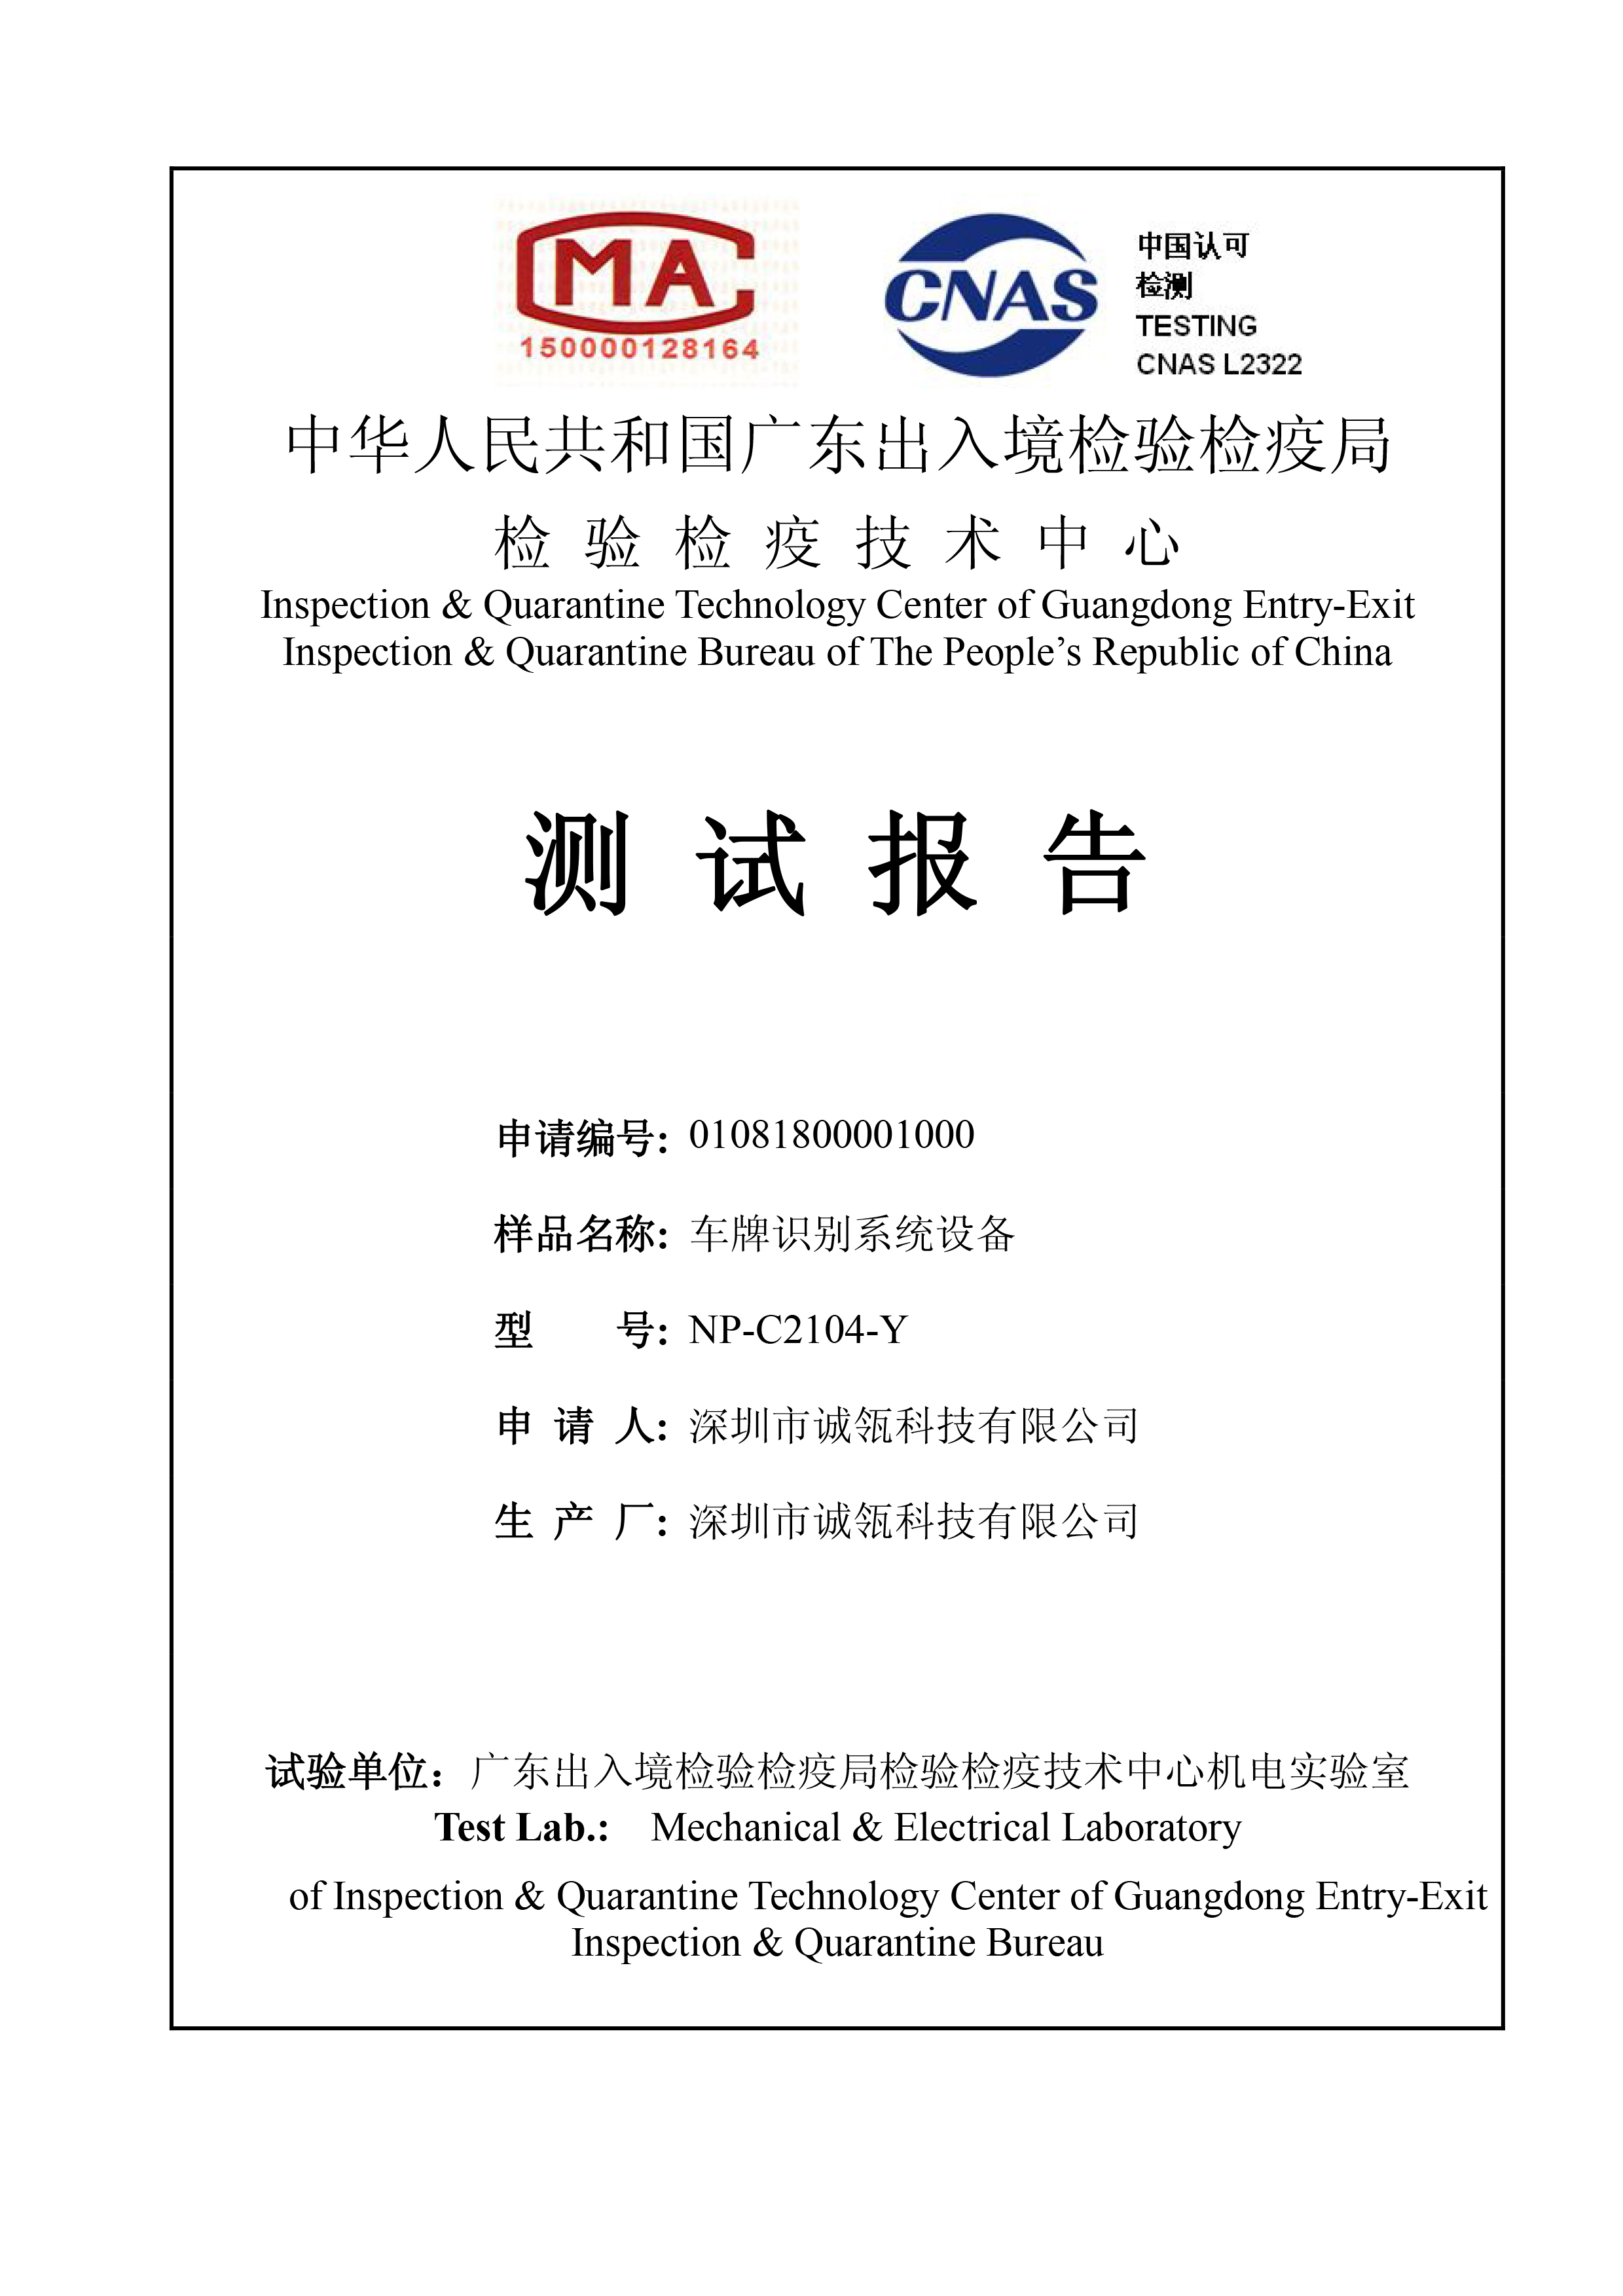 ALPR Testing Report by CIQ of PRC